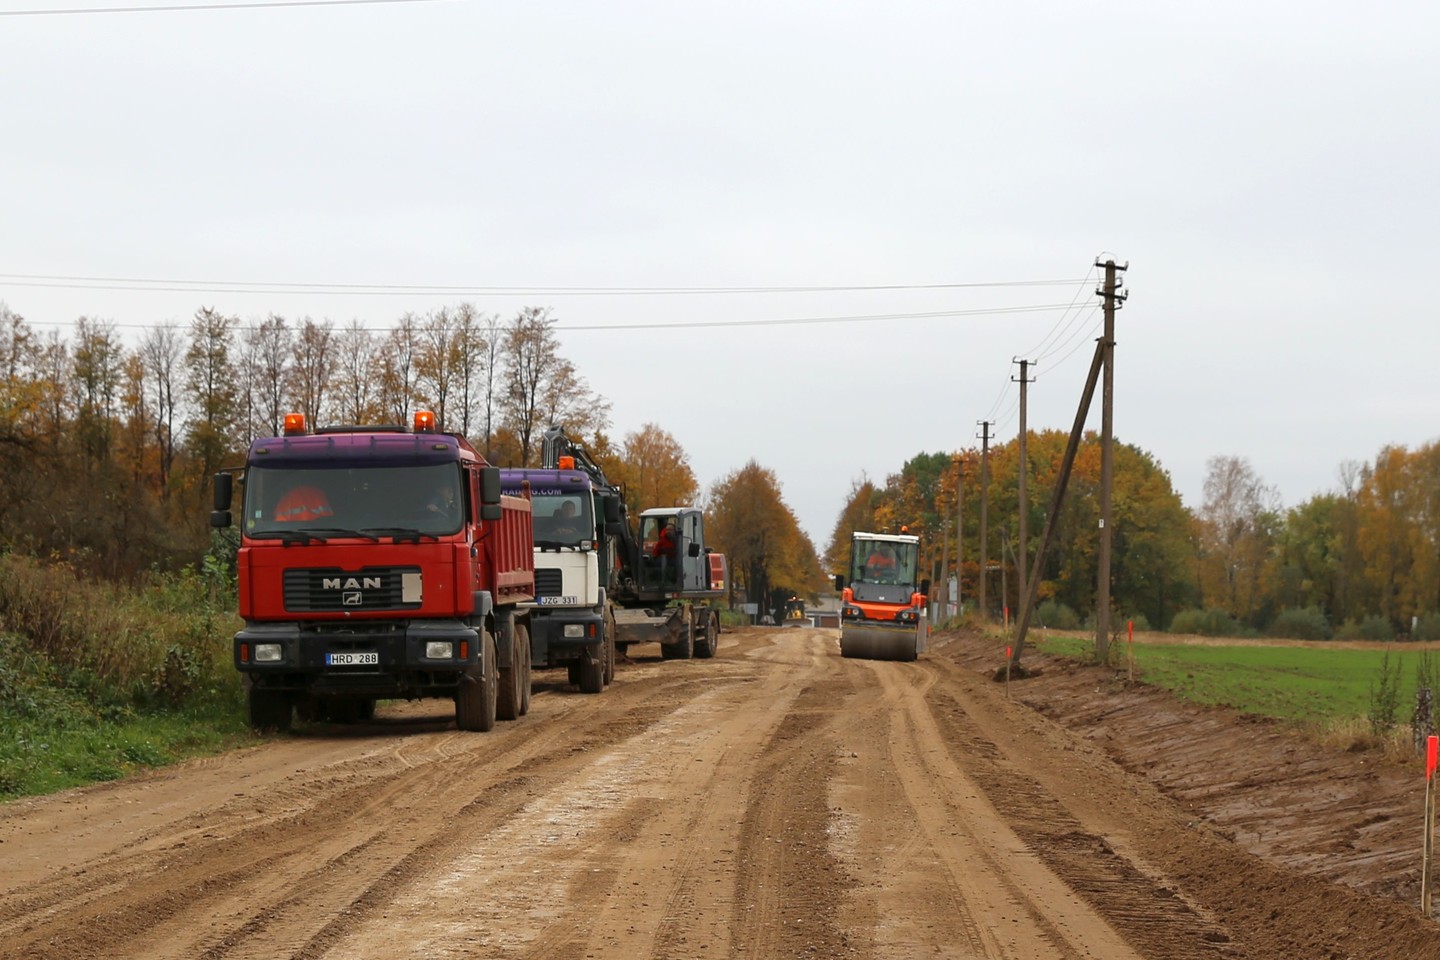  Kauno rajone šiais metais bus padengti asfaltu du žvyrkeliai Batniavos ir Garliavos apylinkių seniūnijose. <br> Kauno rajono savivaldybės nuotr.